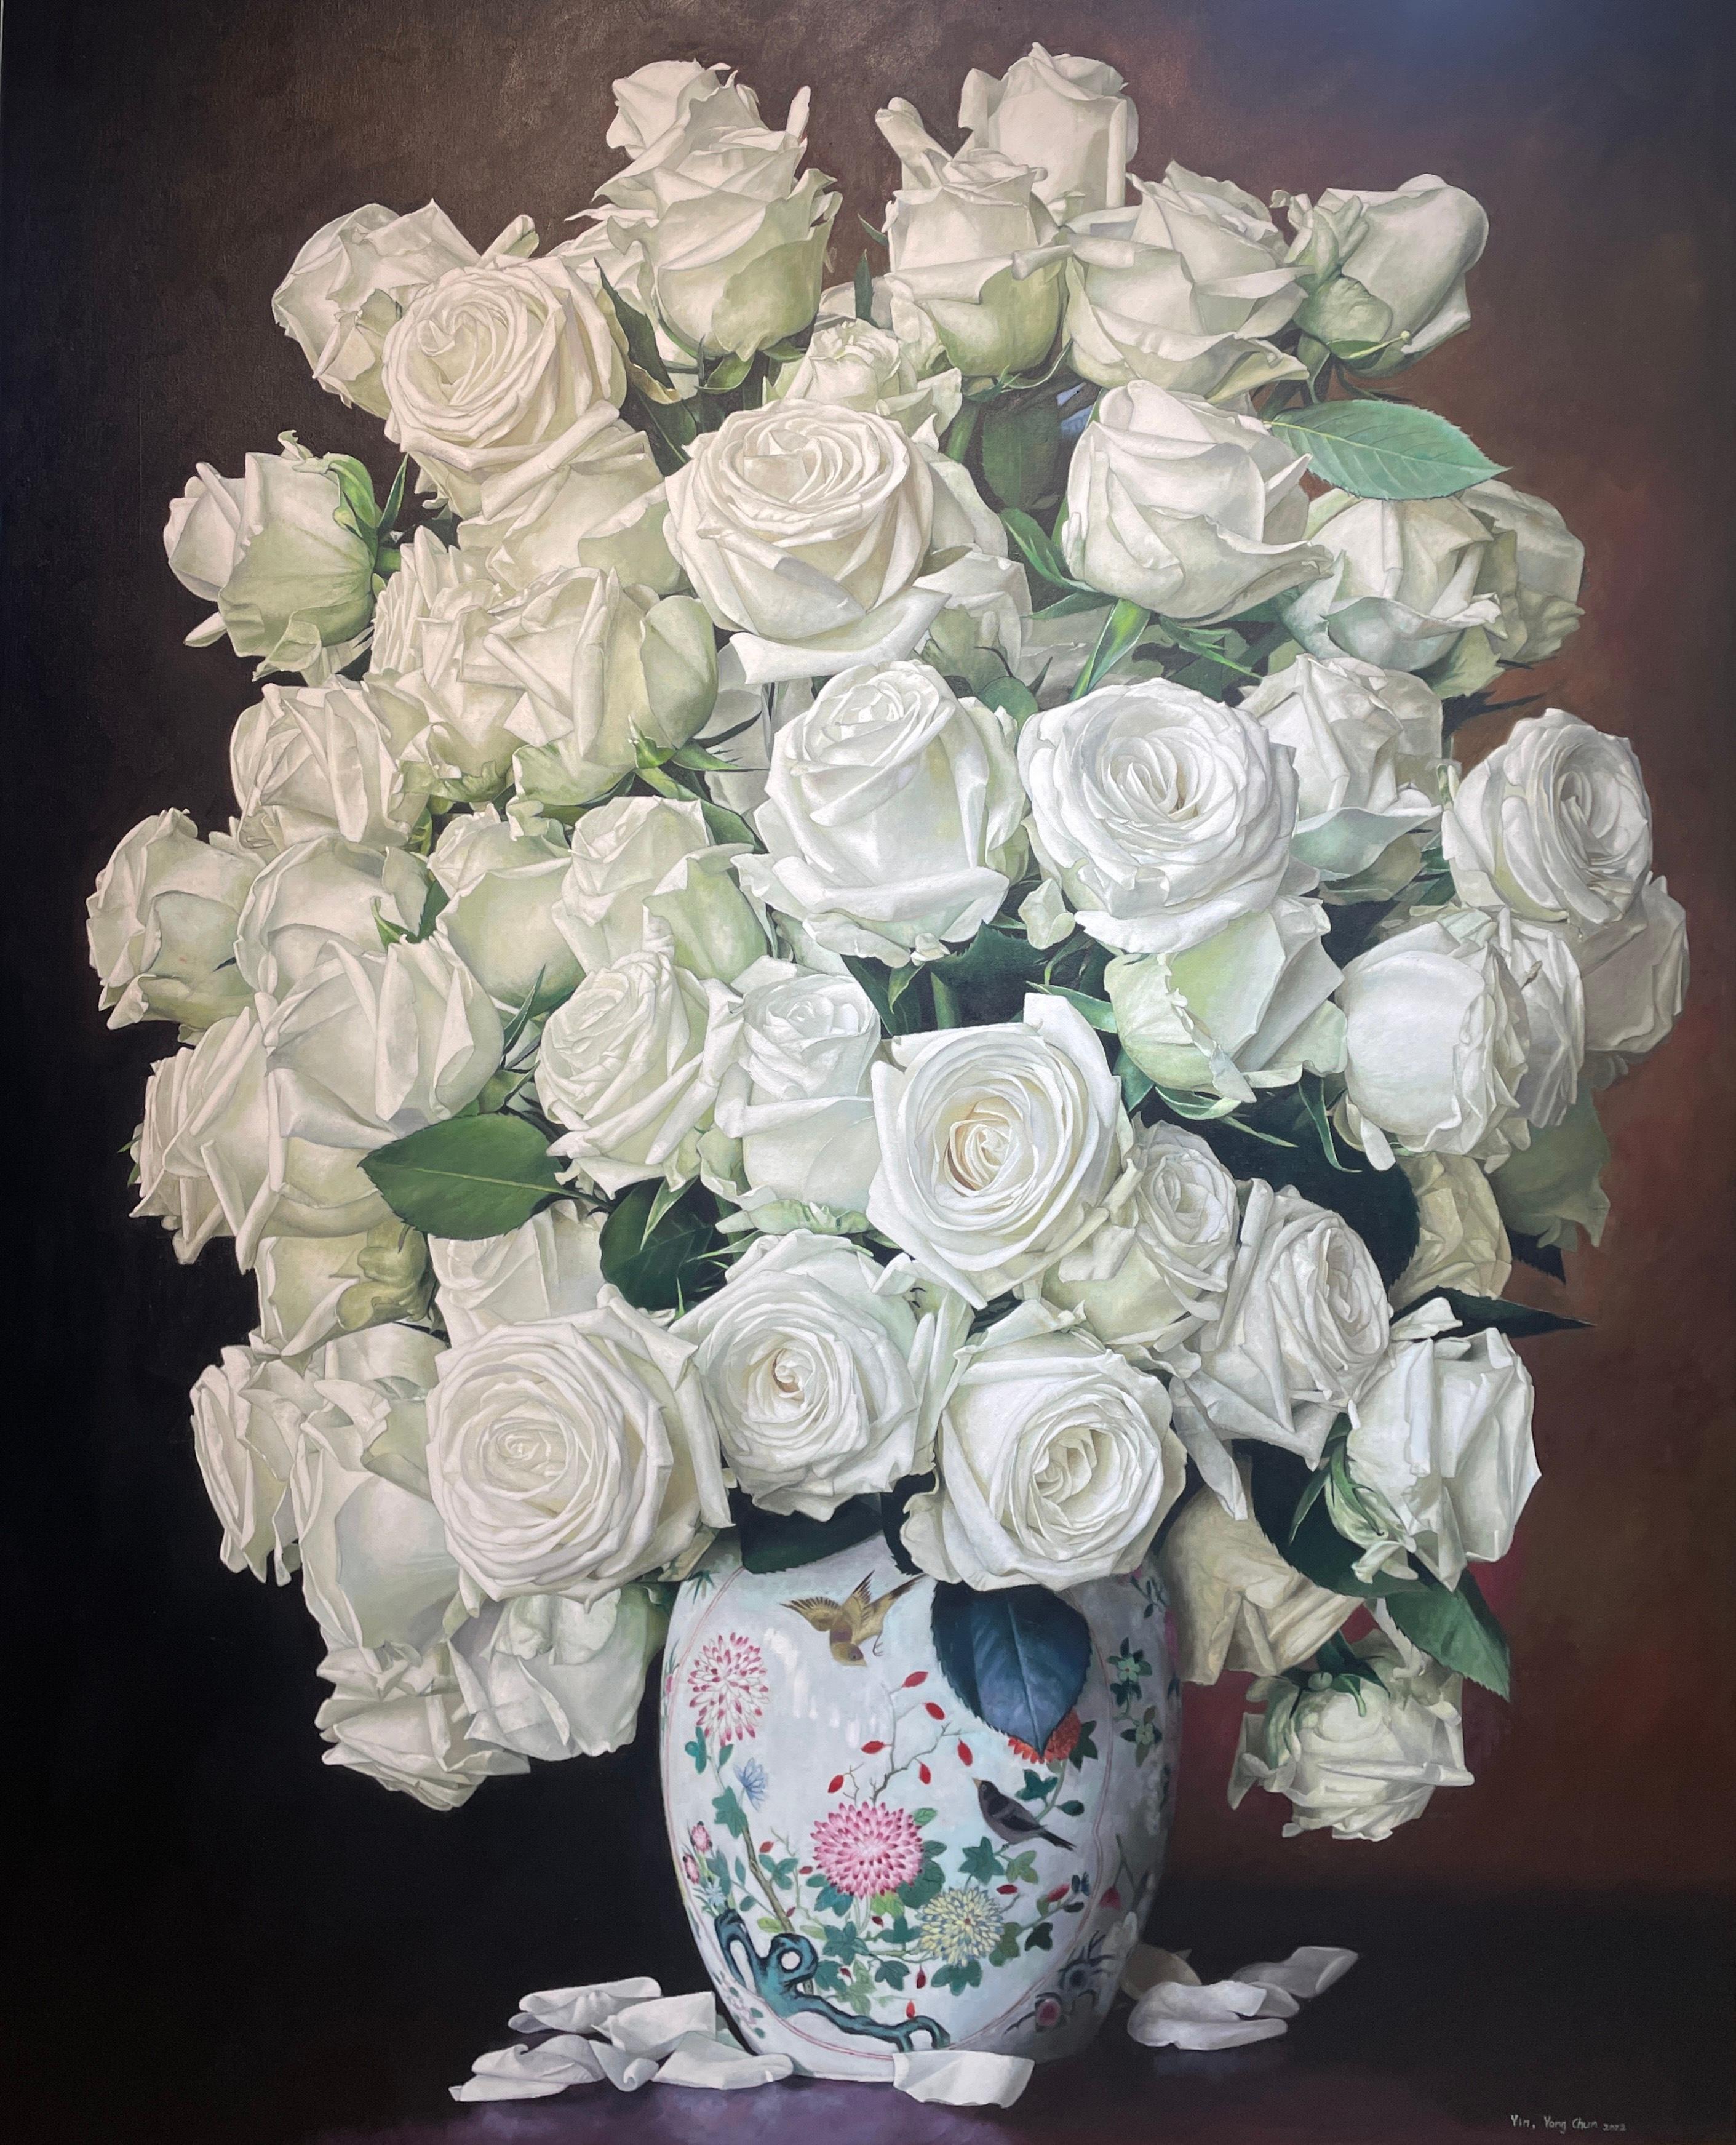 Cette nature morte florale, "White Roses with China Pot", de l'artiste Yin Yong Chun est une peinture à l'huile sur toile de 60x48 représentant un bouquet de roses blanches dans un vase floral en porcelaine orné, avec des pétales blancs tombés sur